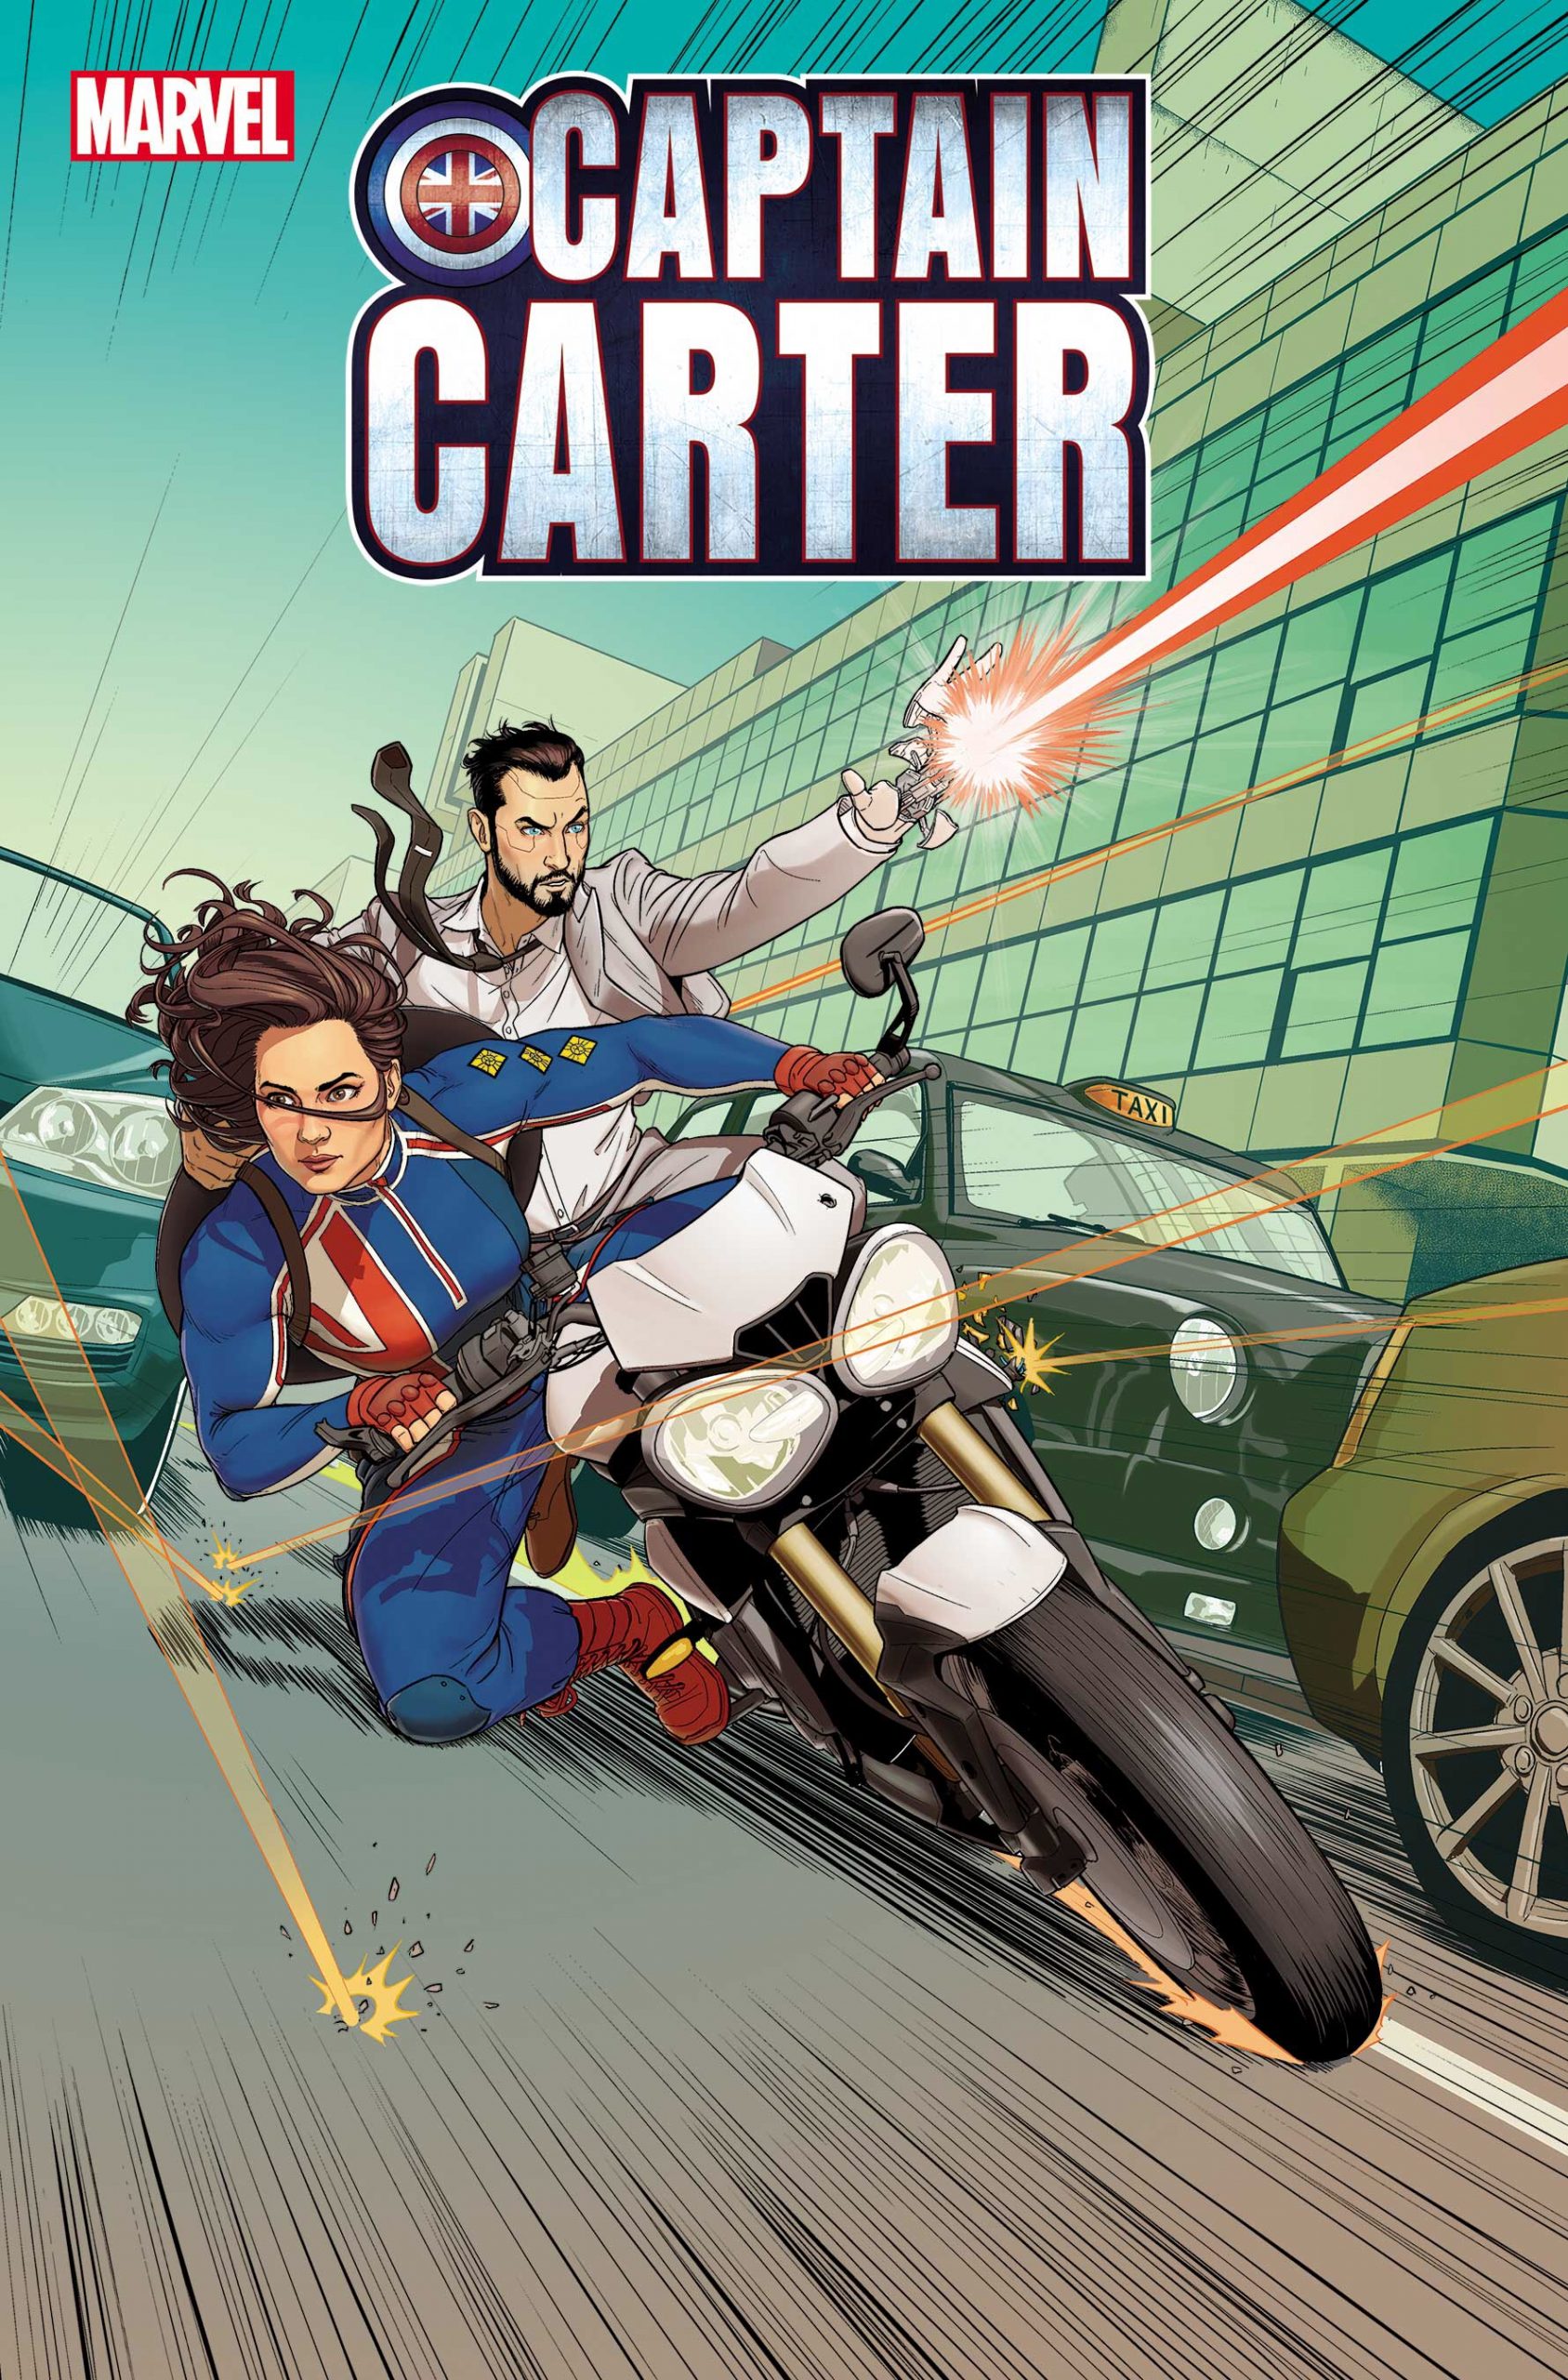 Captain Carter #3 - Cover A Regular Jamie McKelvie Cover